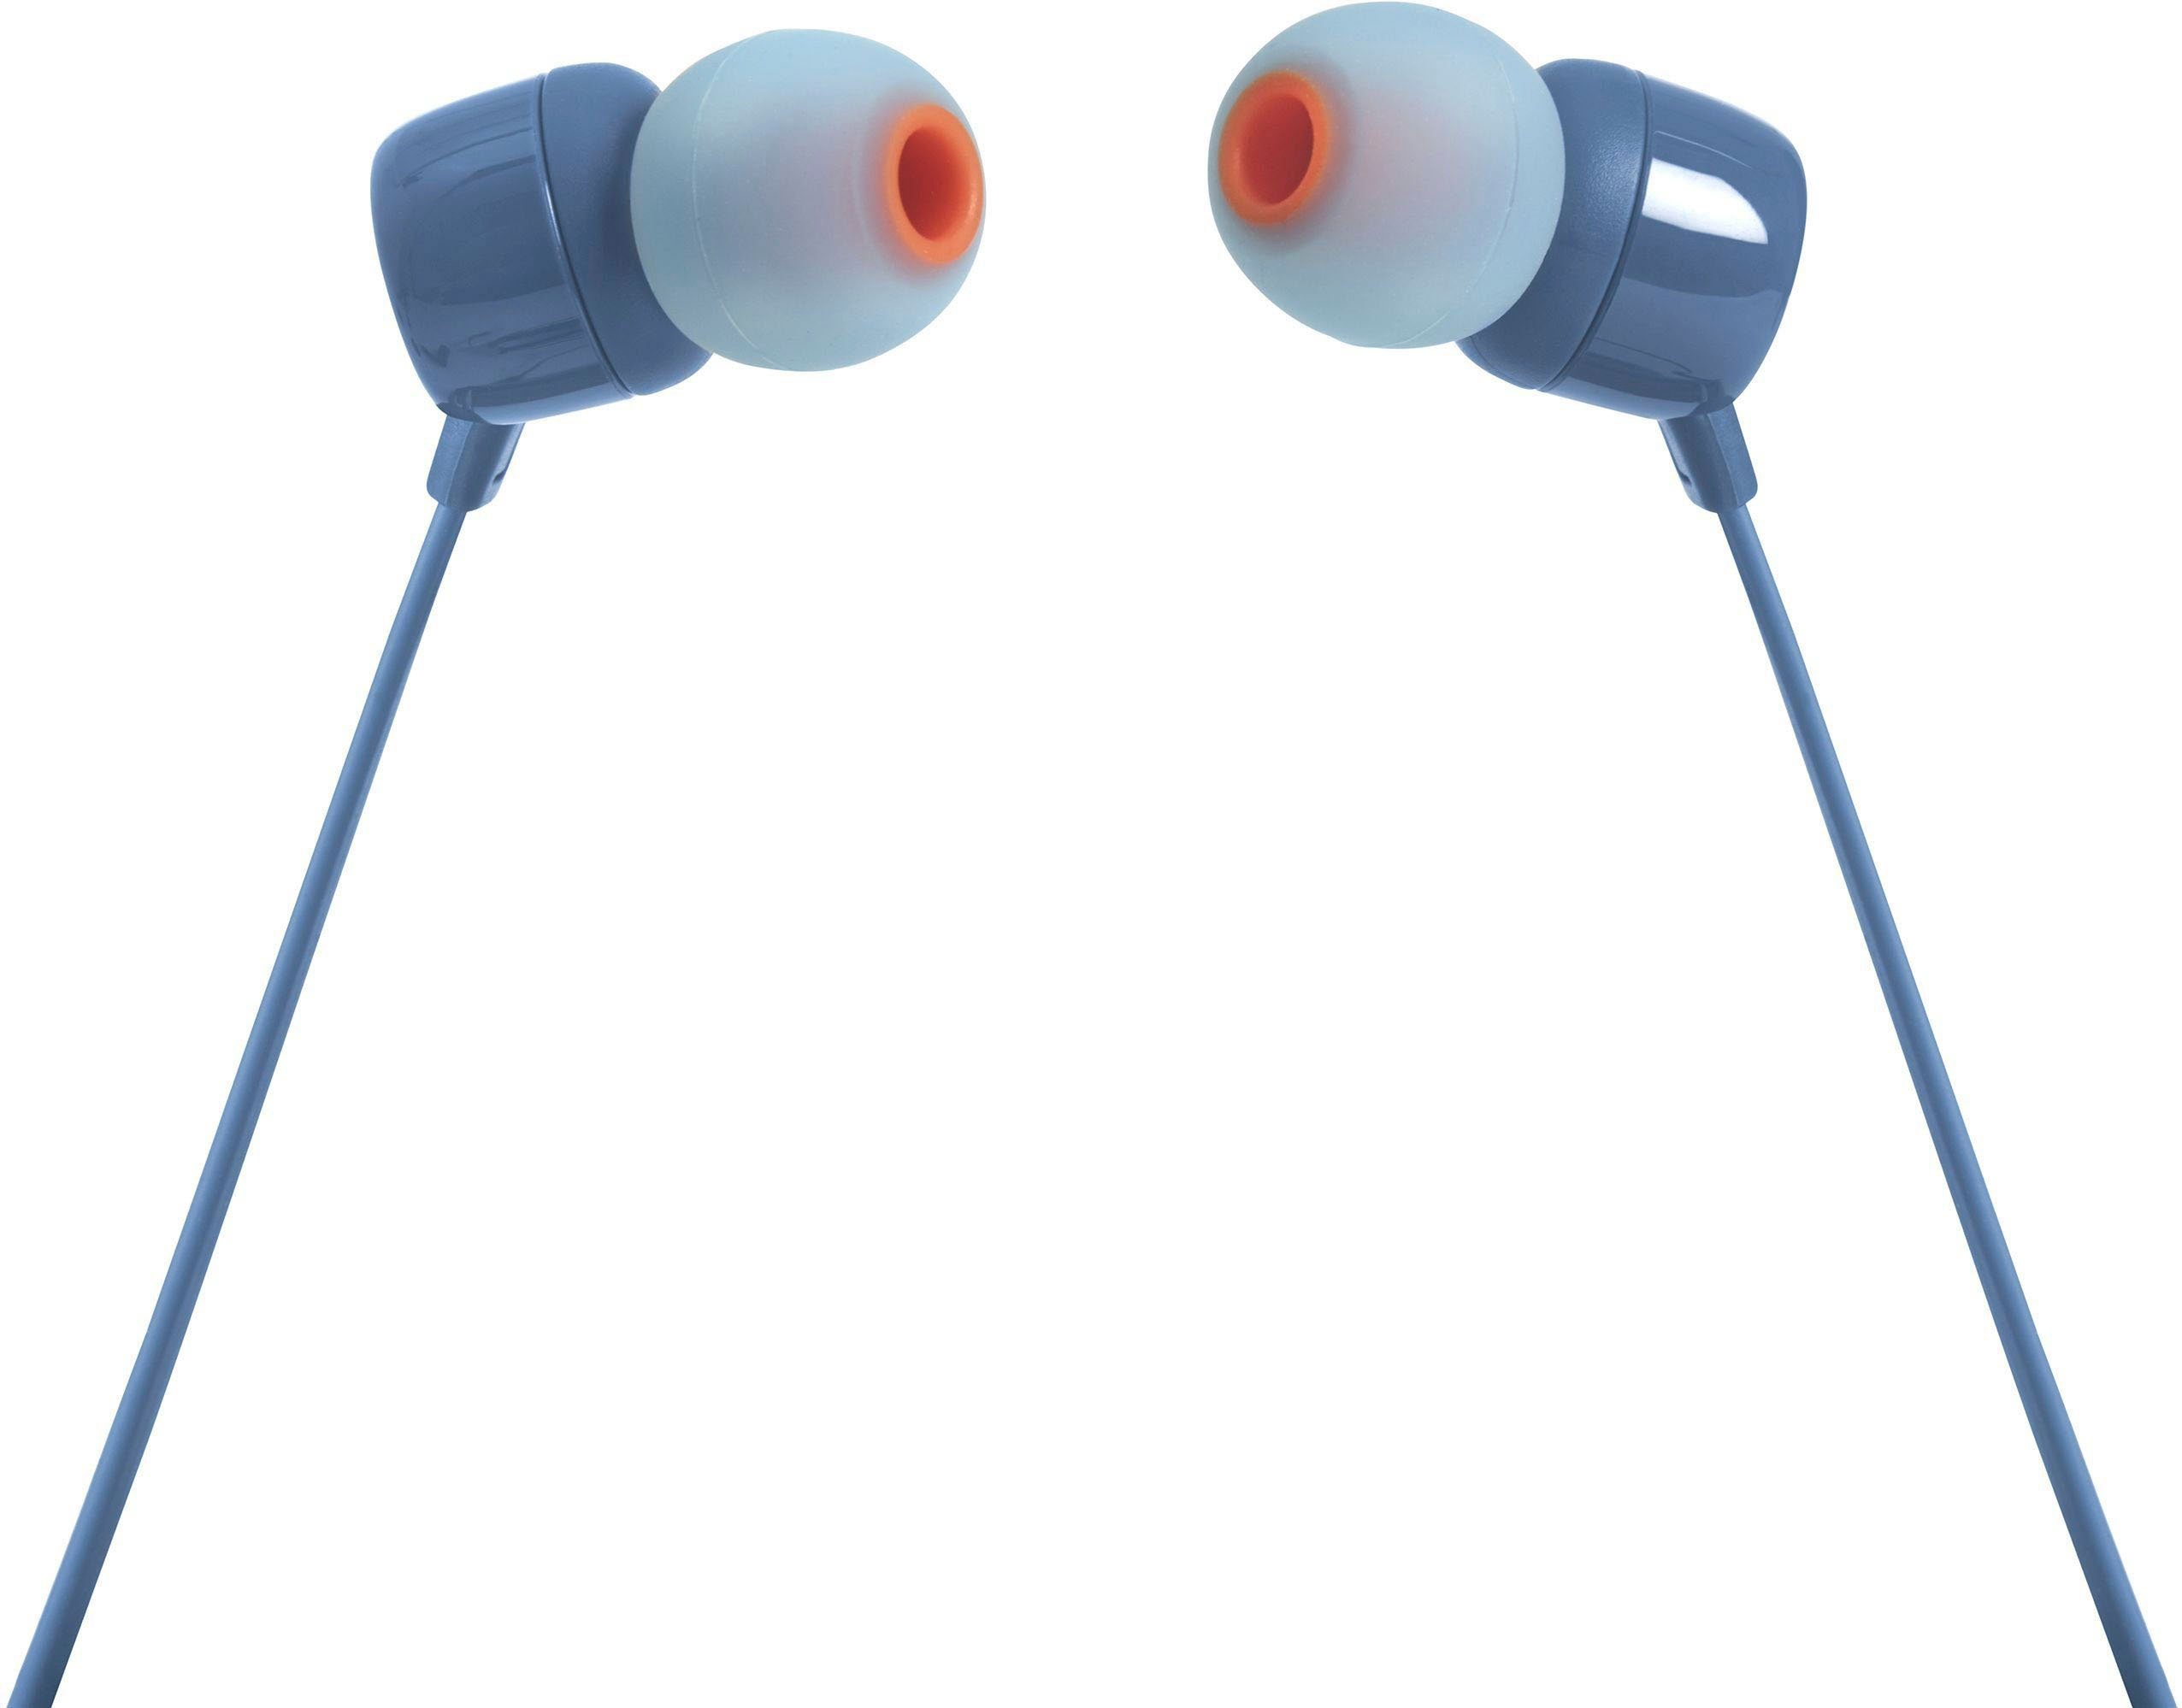 JBL blau T110 In-Ear-Kopfhörer